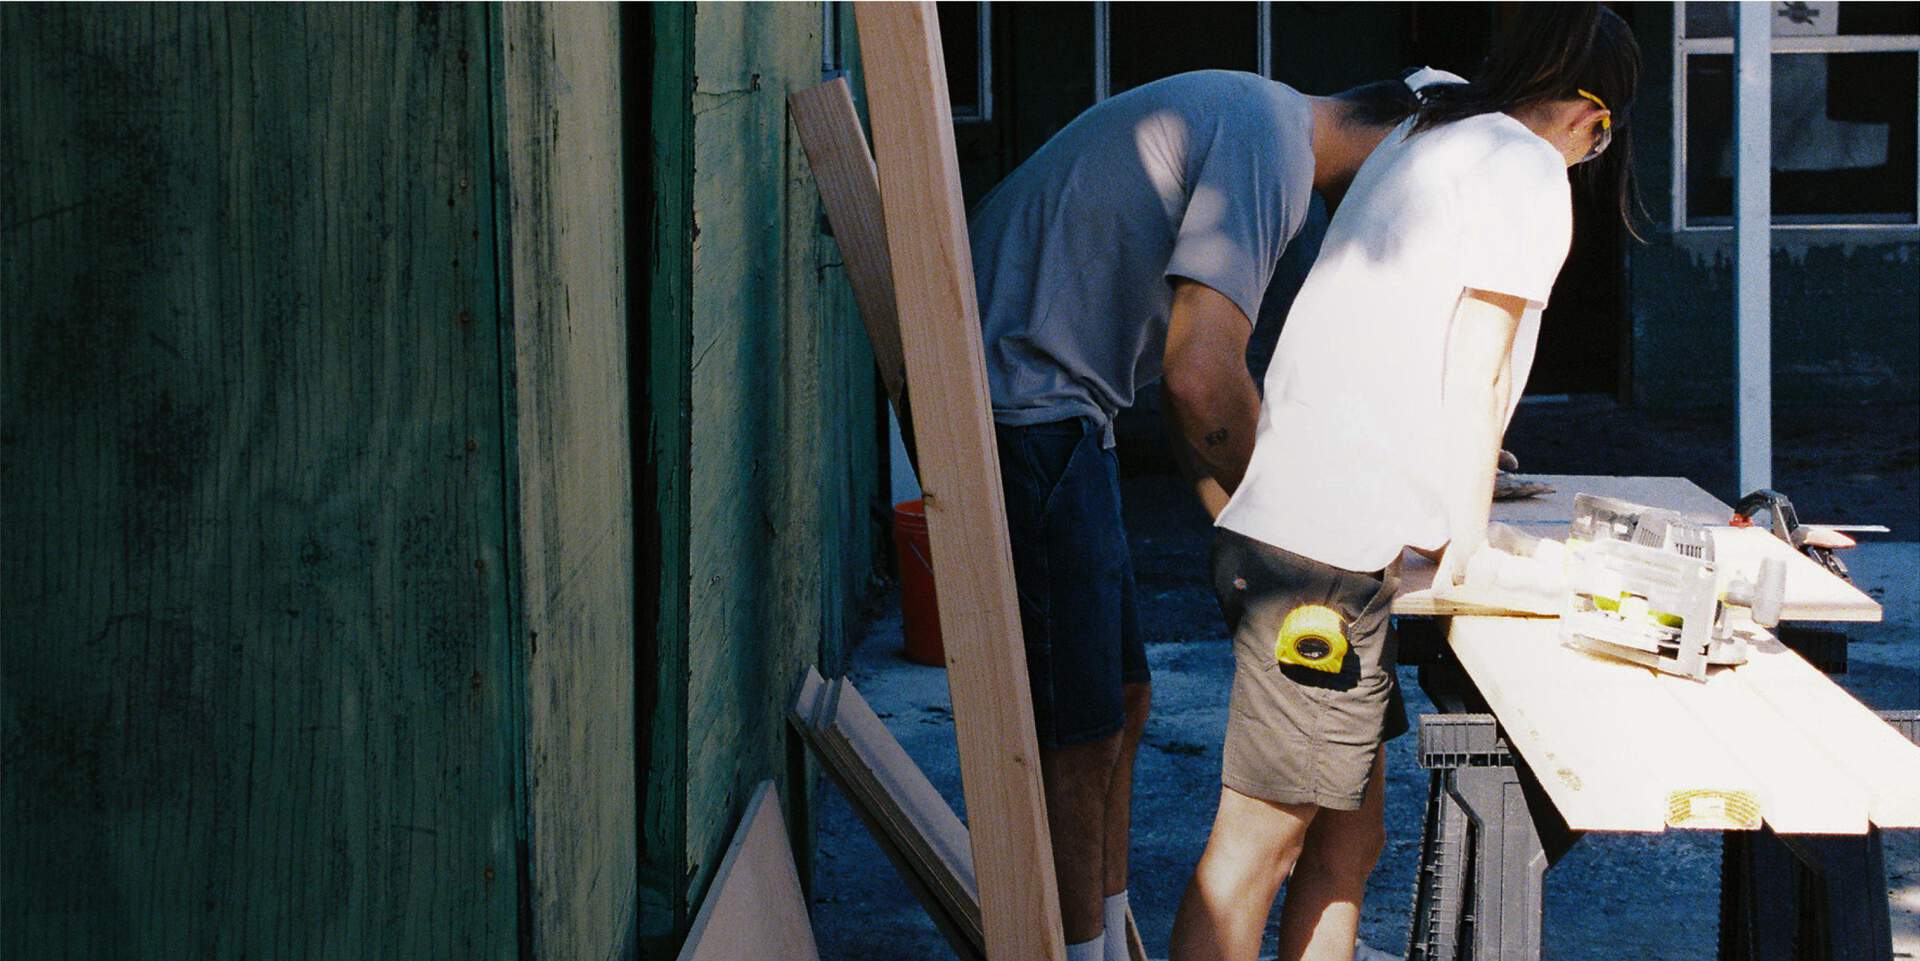 Two men working wearing Dickies shorts